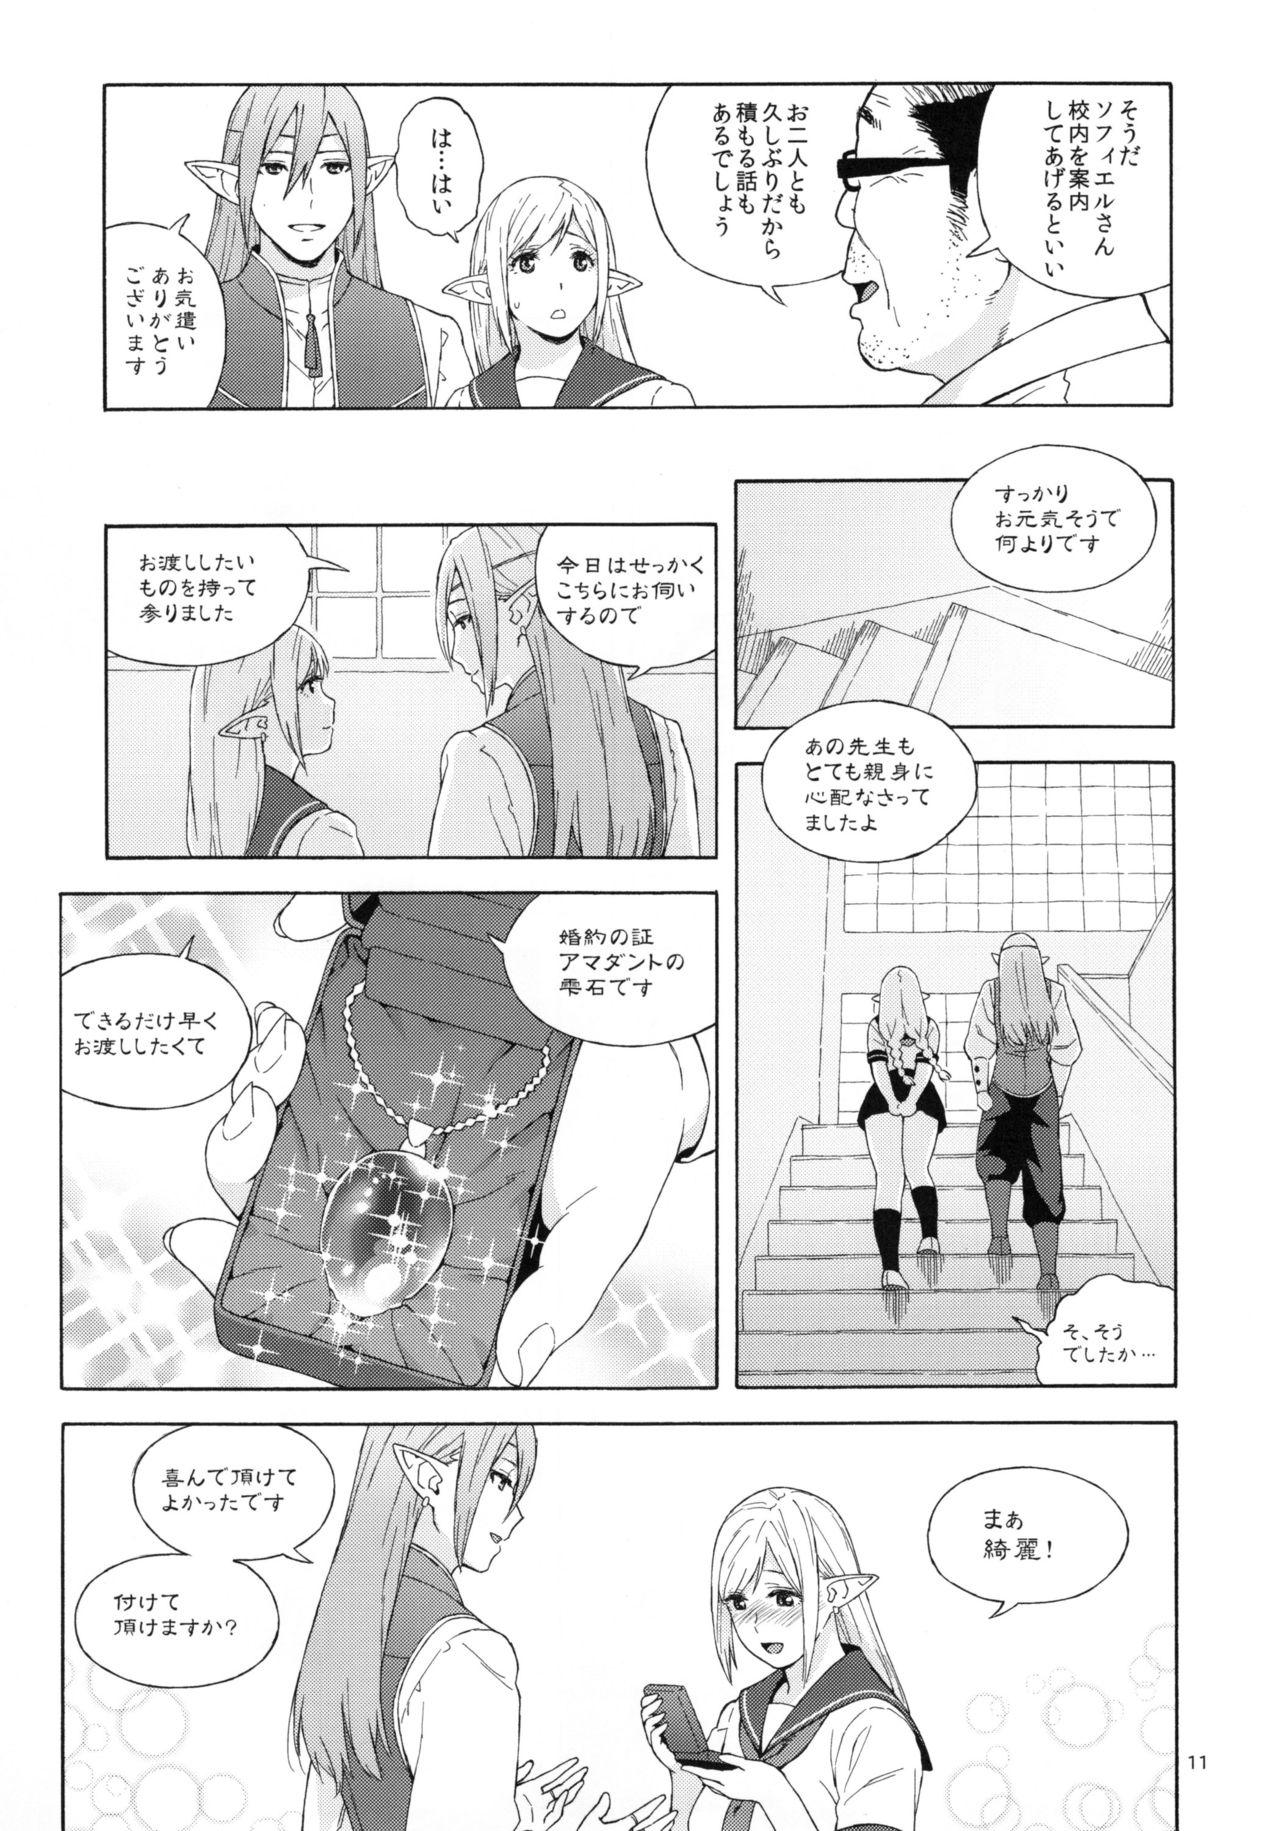 Piercing Tenkousei JK Elf 2 X - Page 11